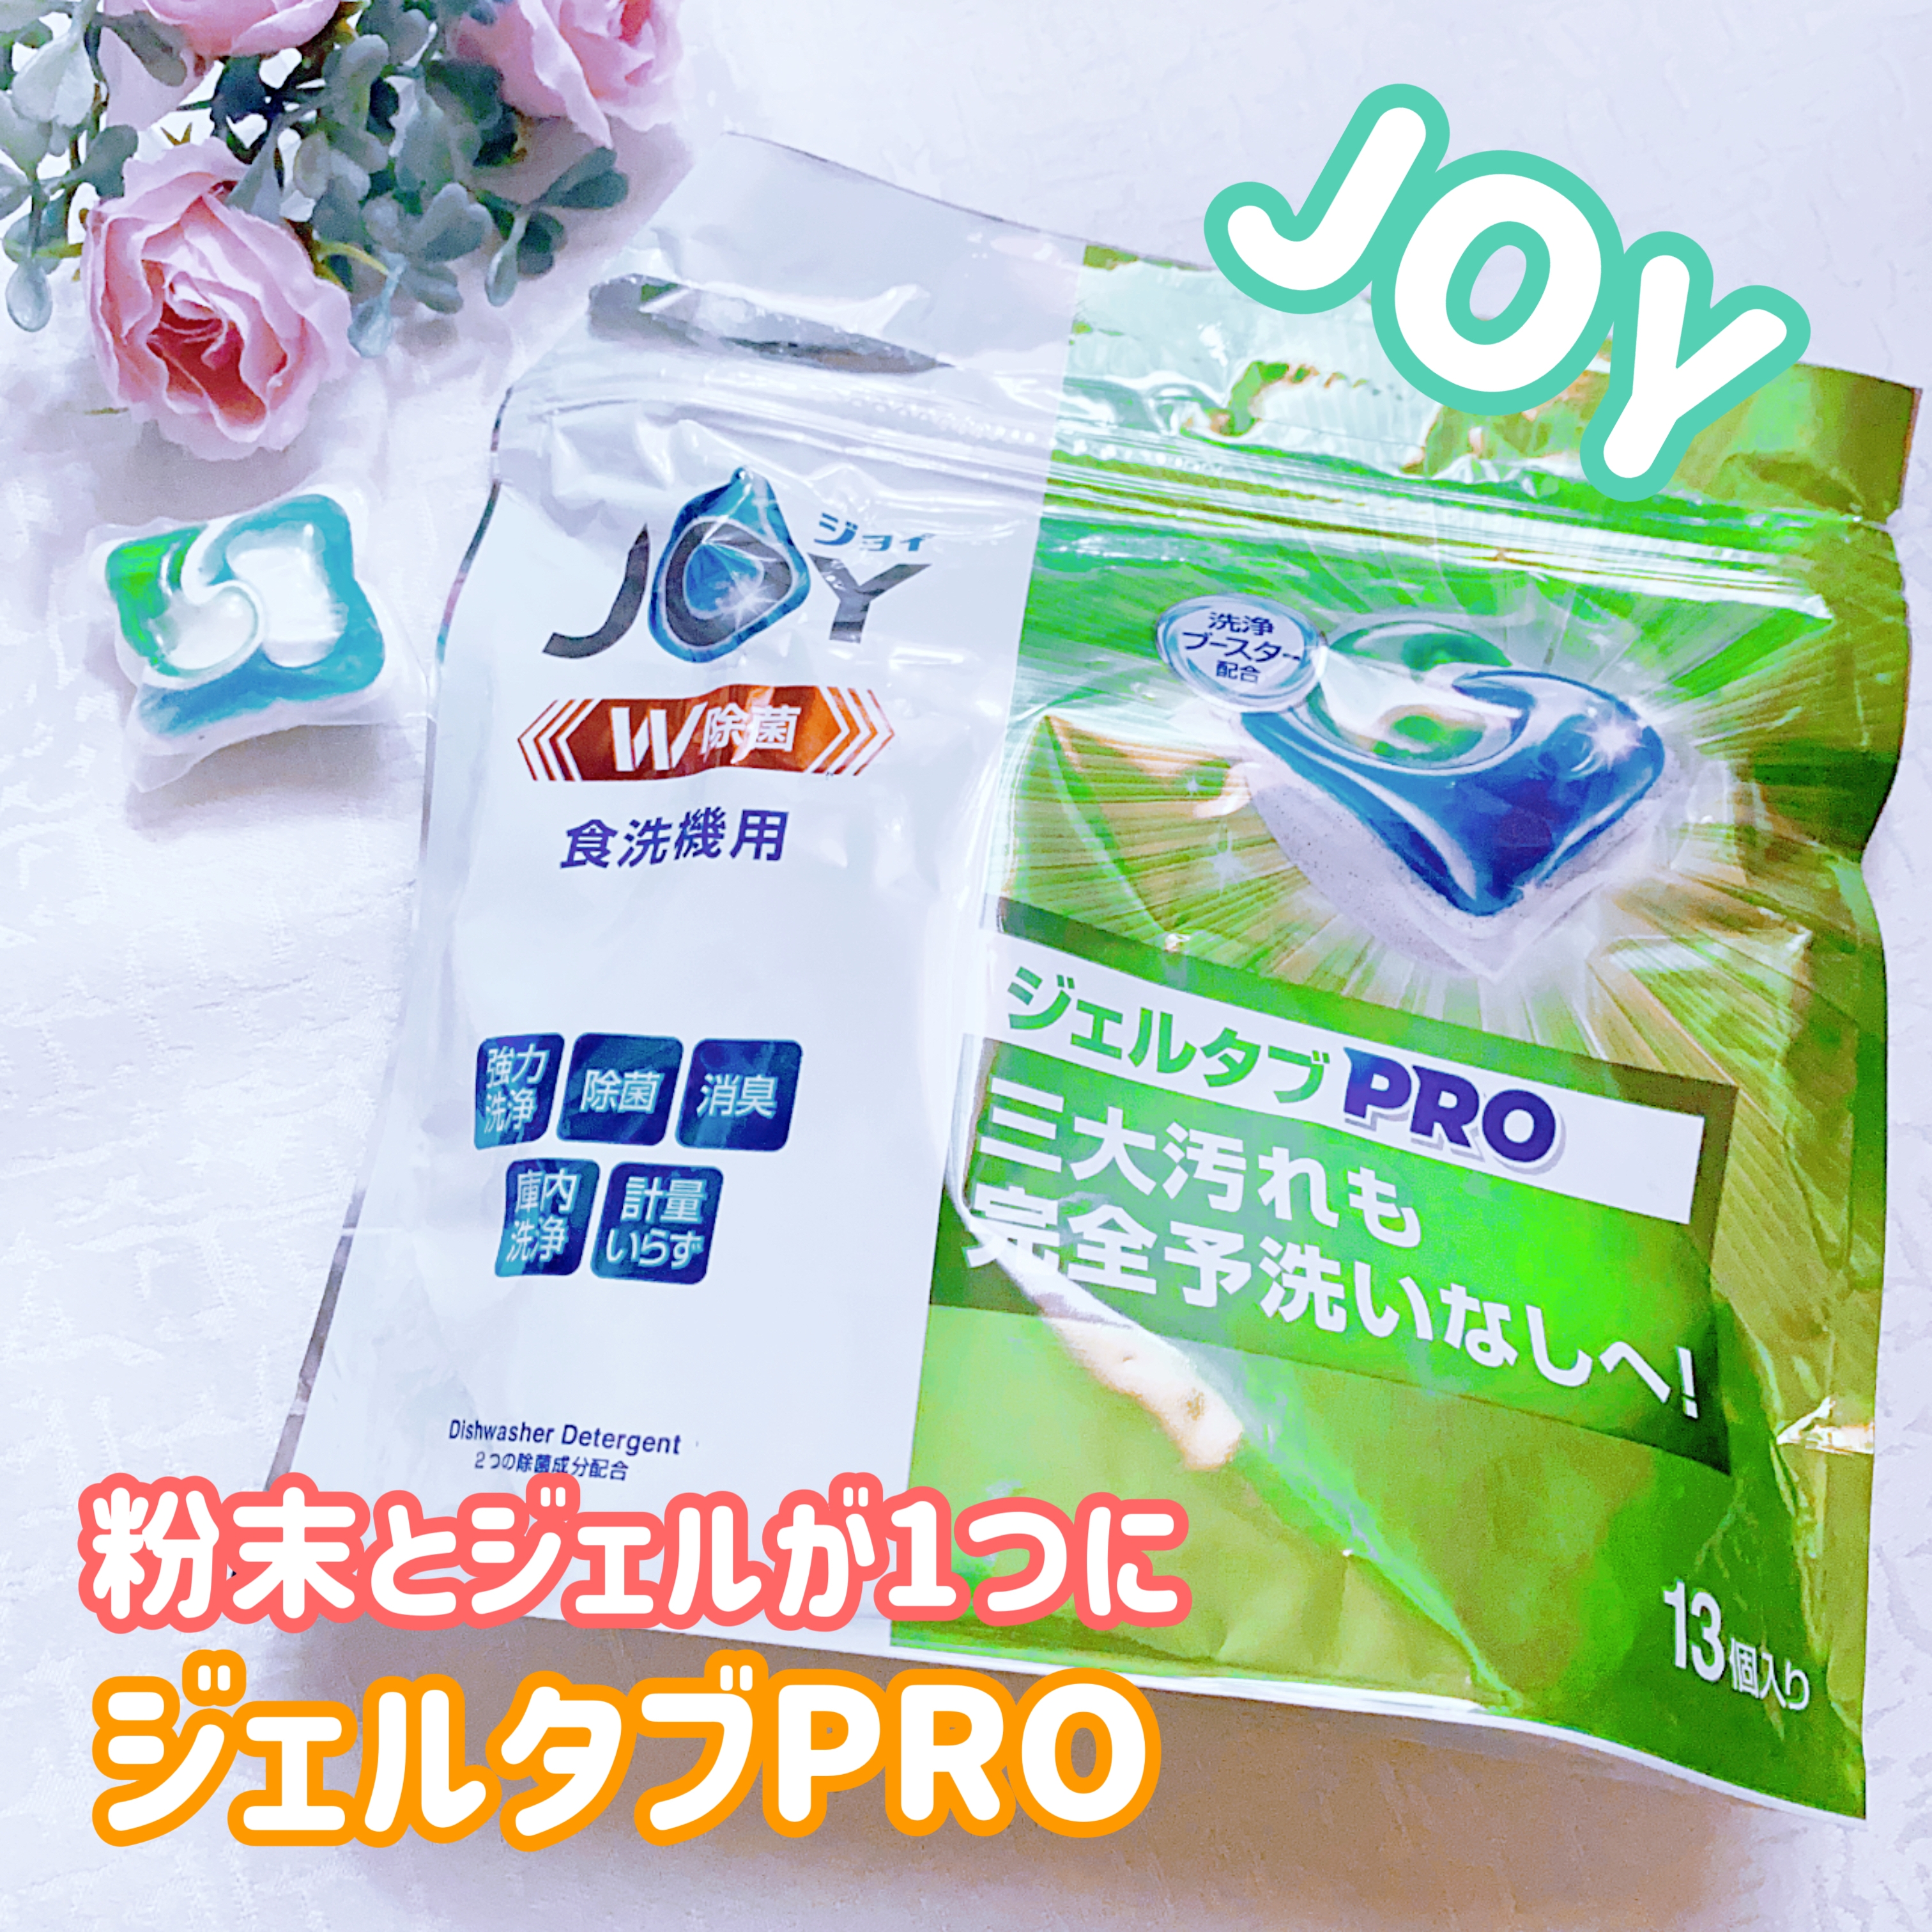 JOY(ジョイ) ジェルタブ 食洗機用洗剤の良い点・メリットに関する珈琲豆♡さんの口コミ画像1